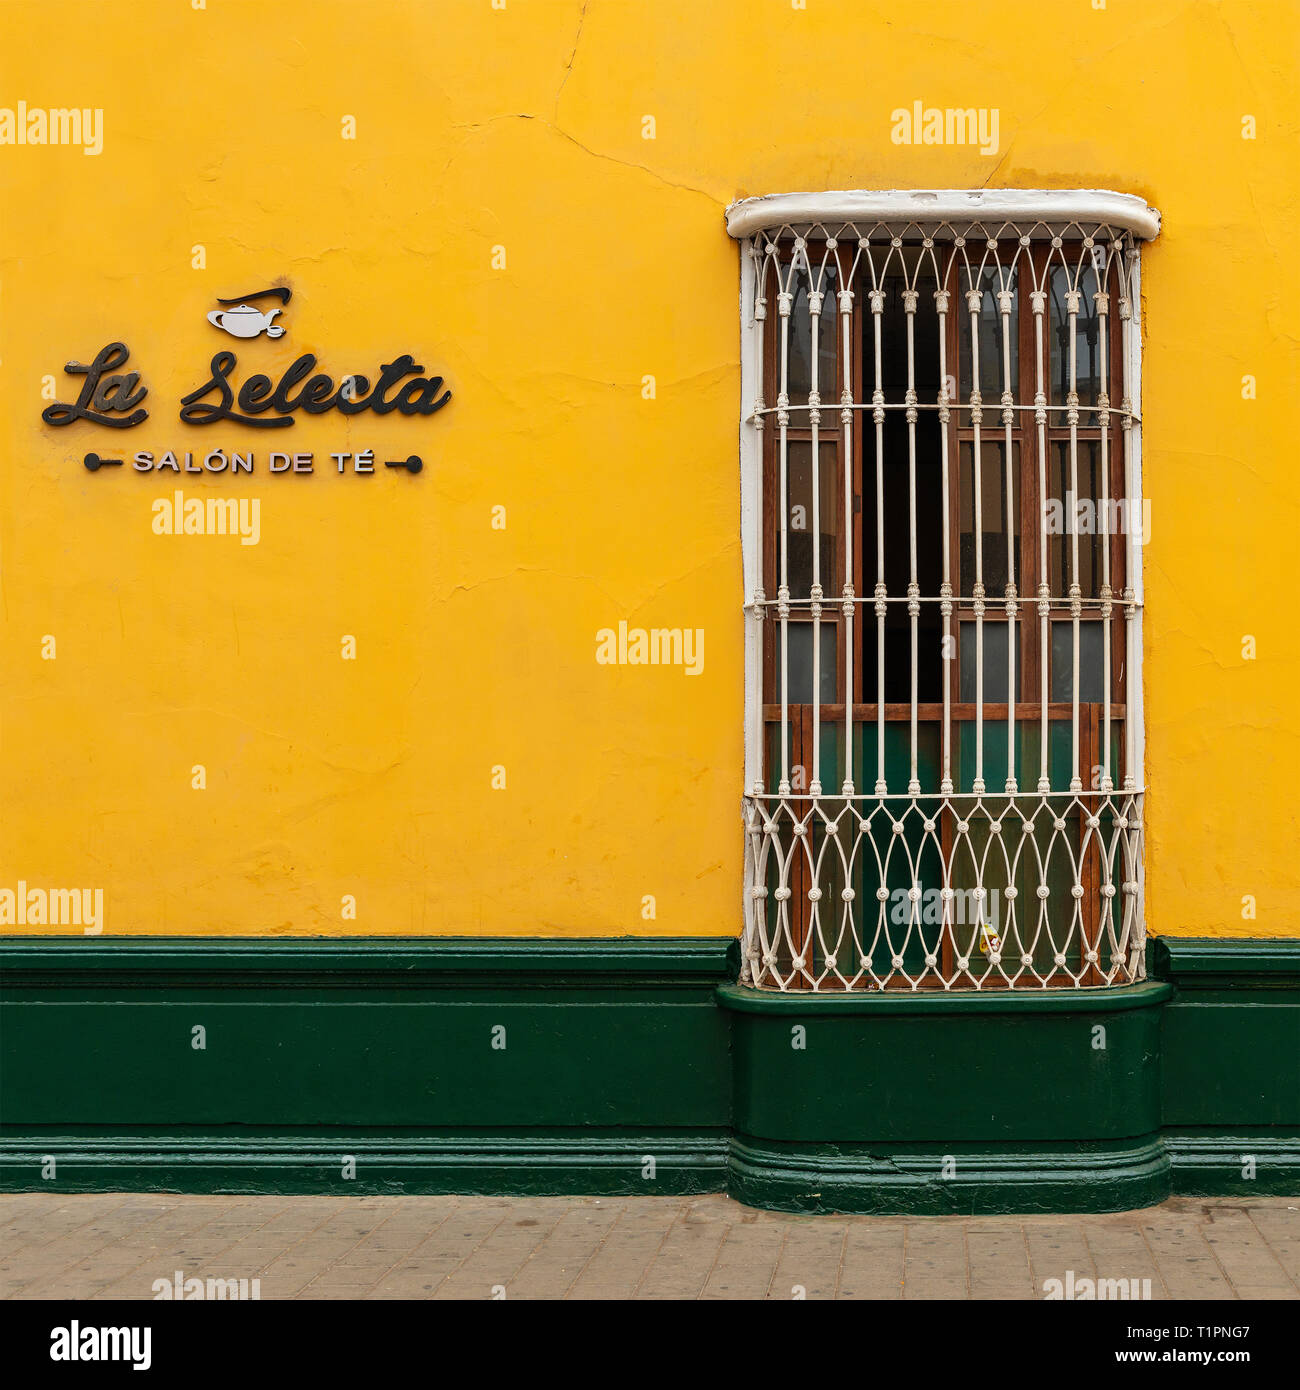 La façade jaune et vert dans le centre-ville de Trujillo, dans l'architecture de style colonial avec une décoration de fenêtre en fonte, au Pérou. Sélectionnez 'Le Plateau Saloon'. Banque D'Images